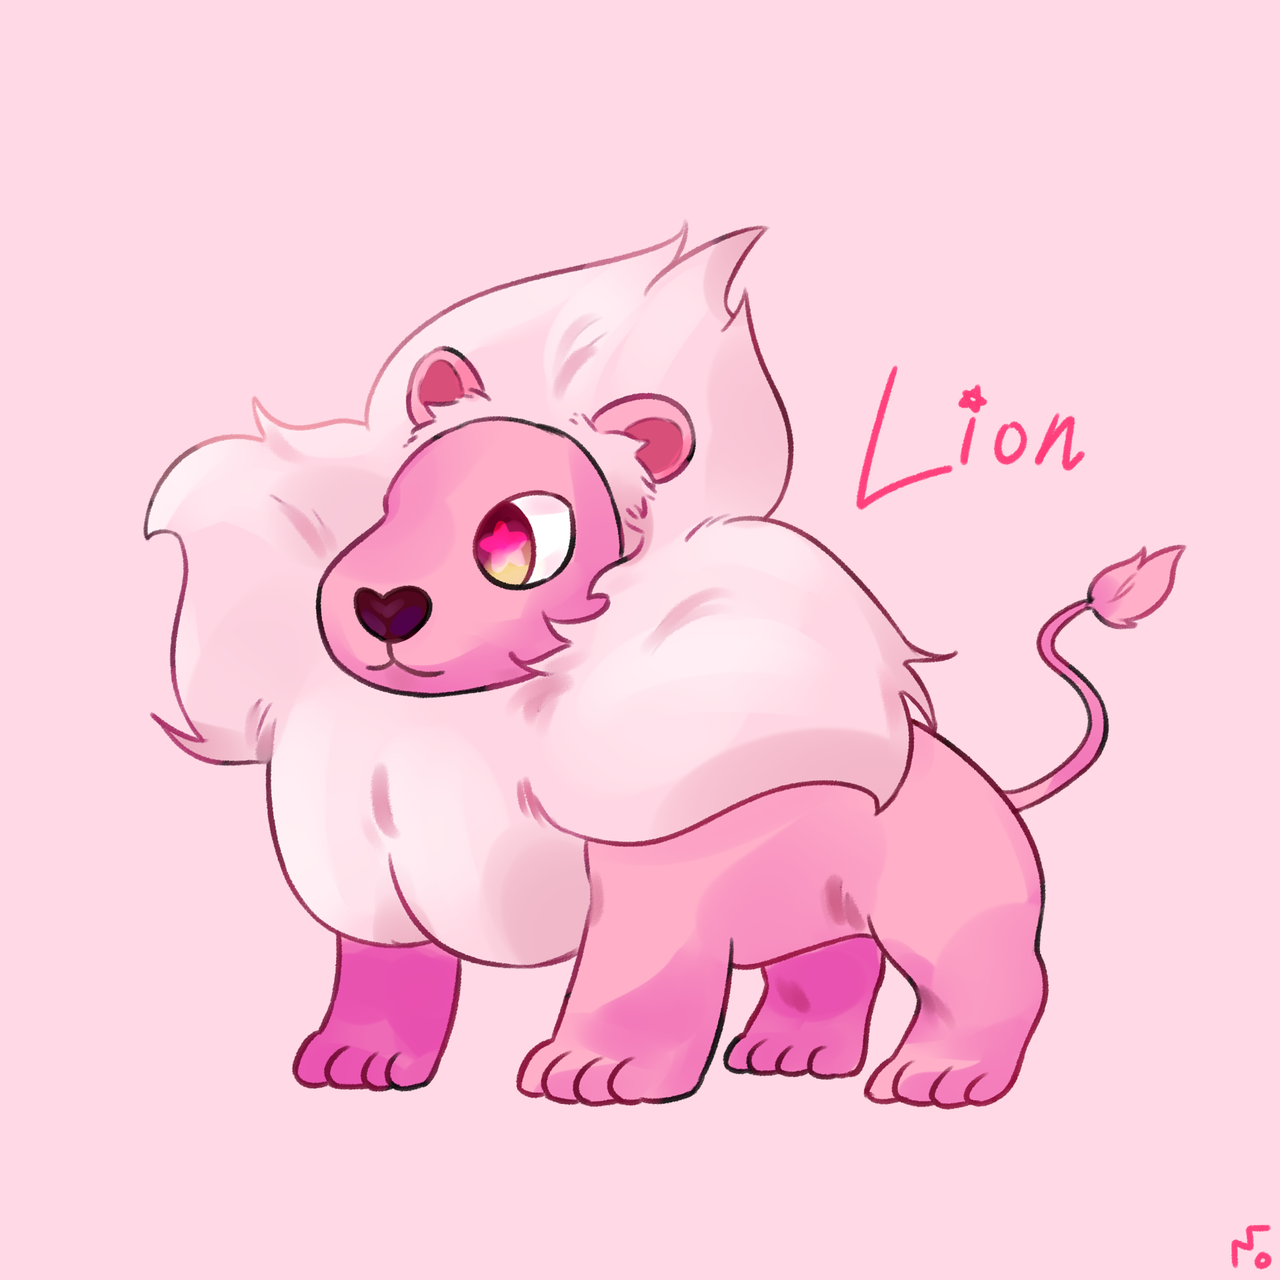 LION!